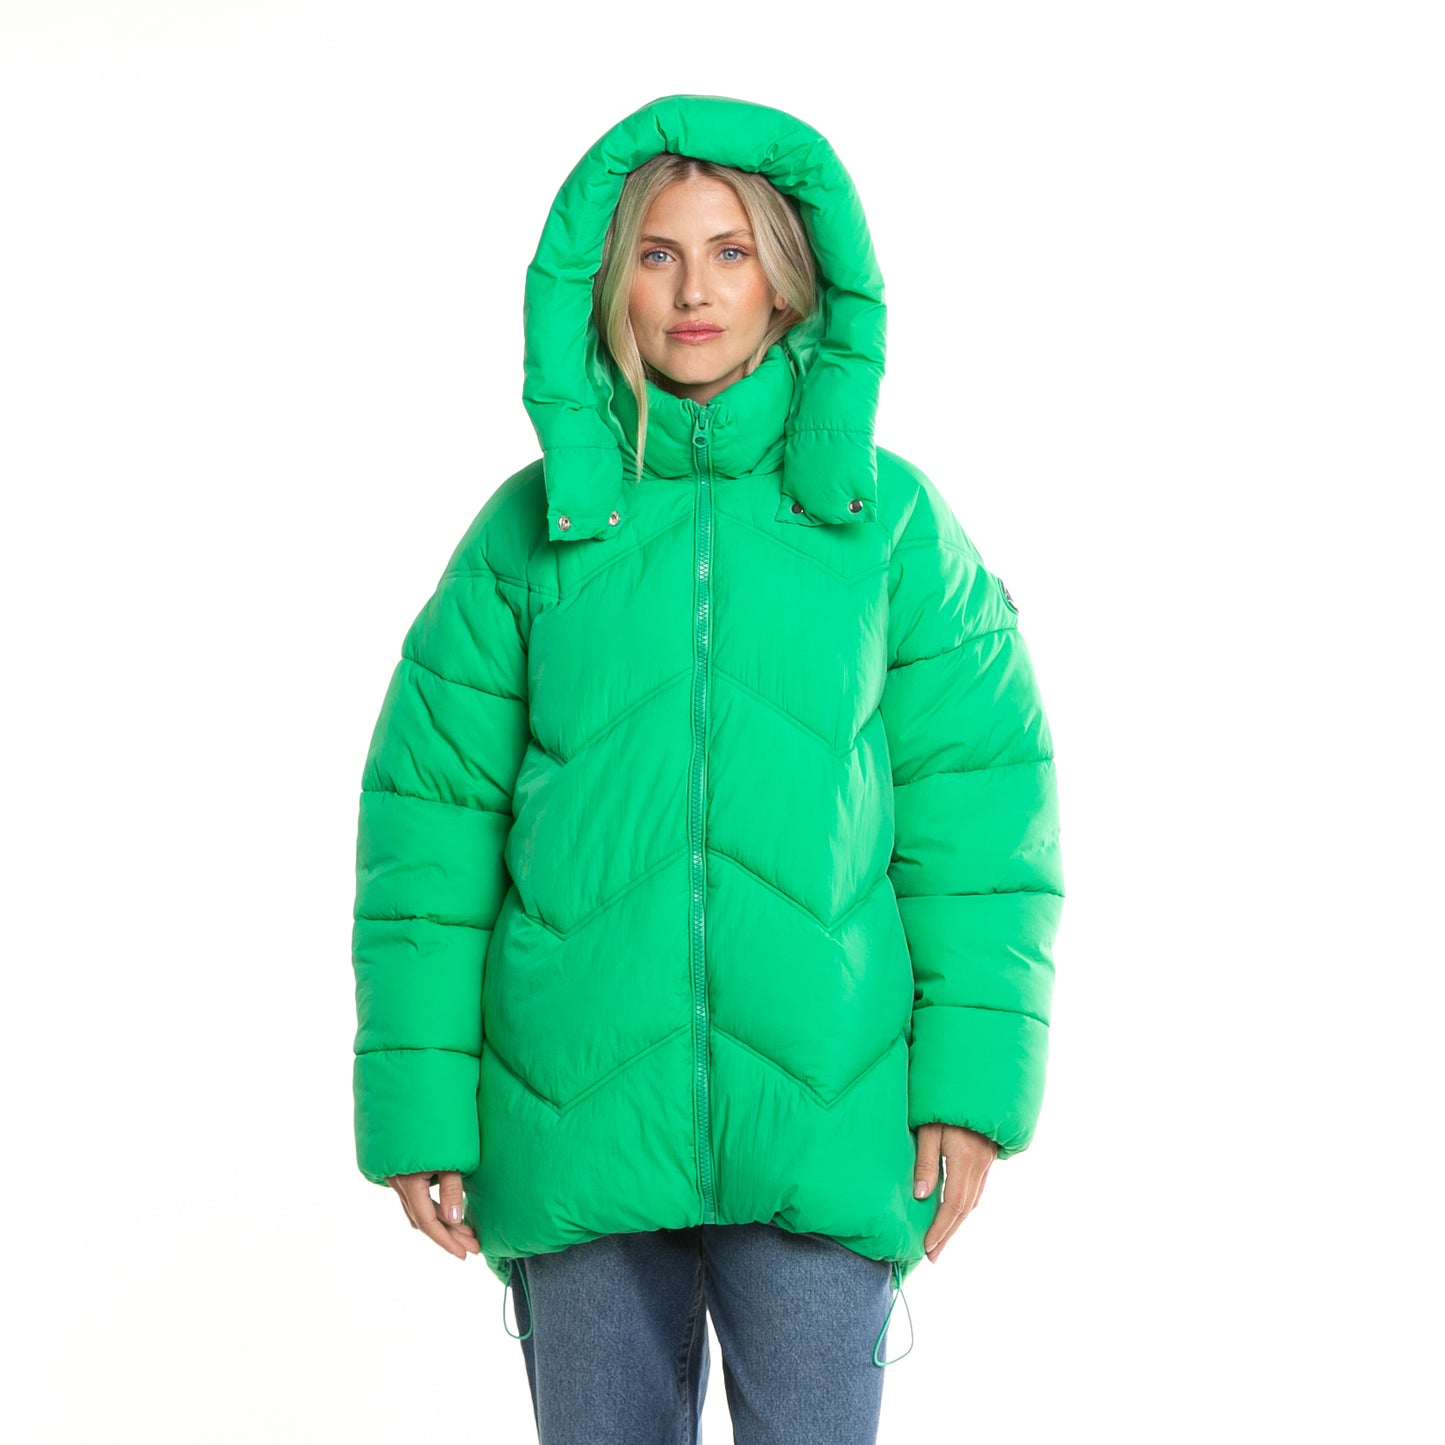 Campera Abrigo Higher Puffer Coat* Verde Manzana